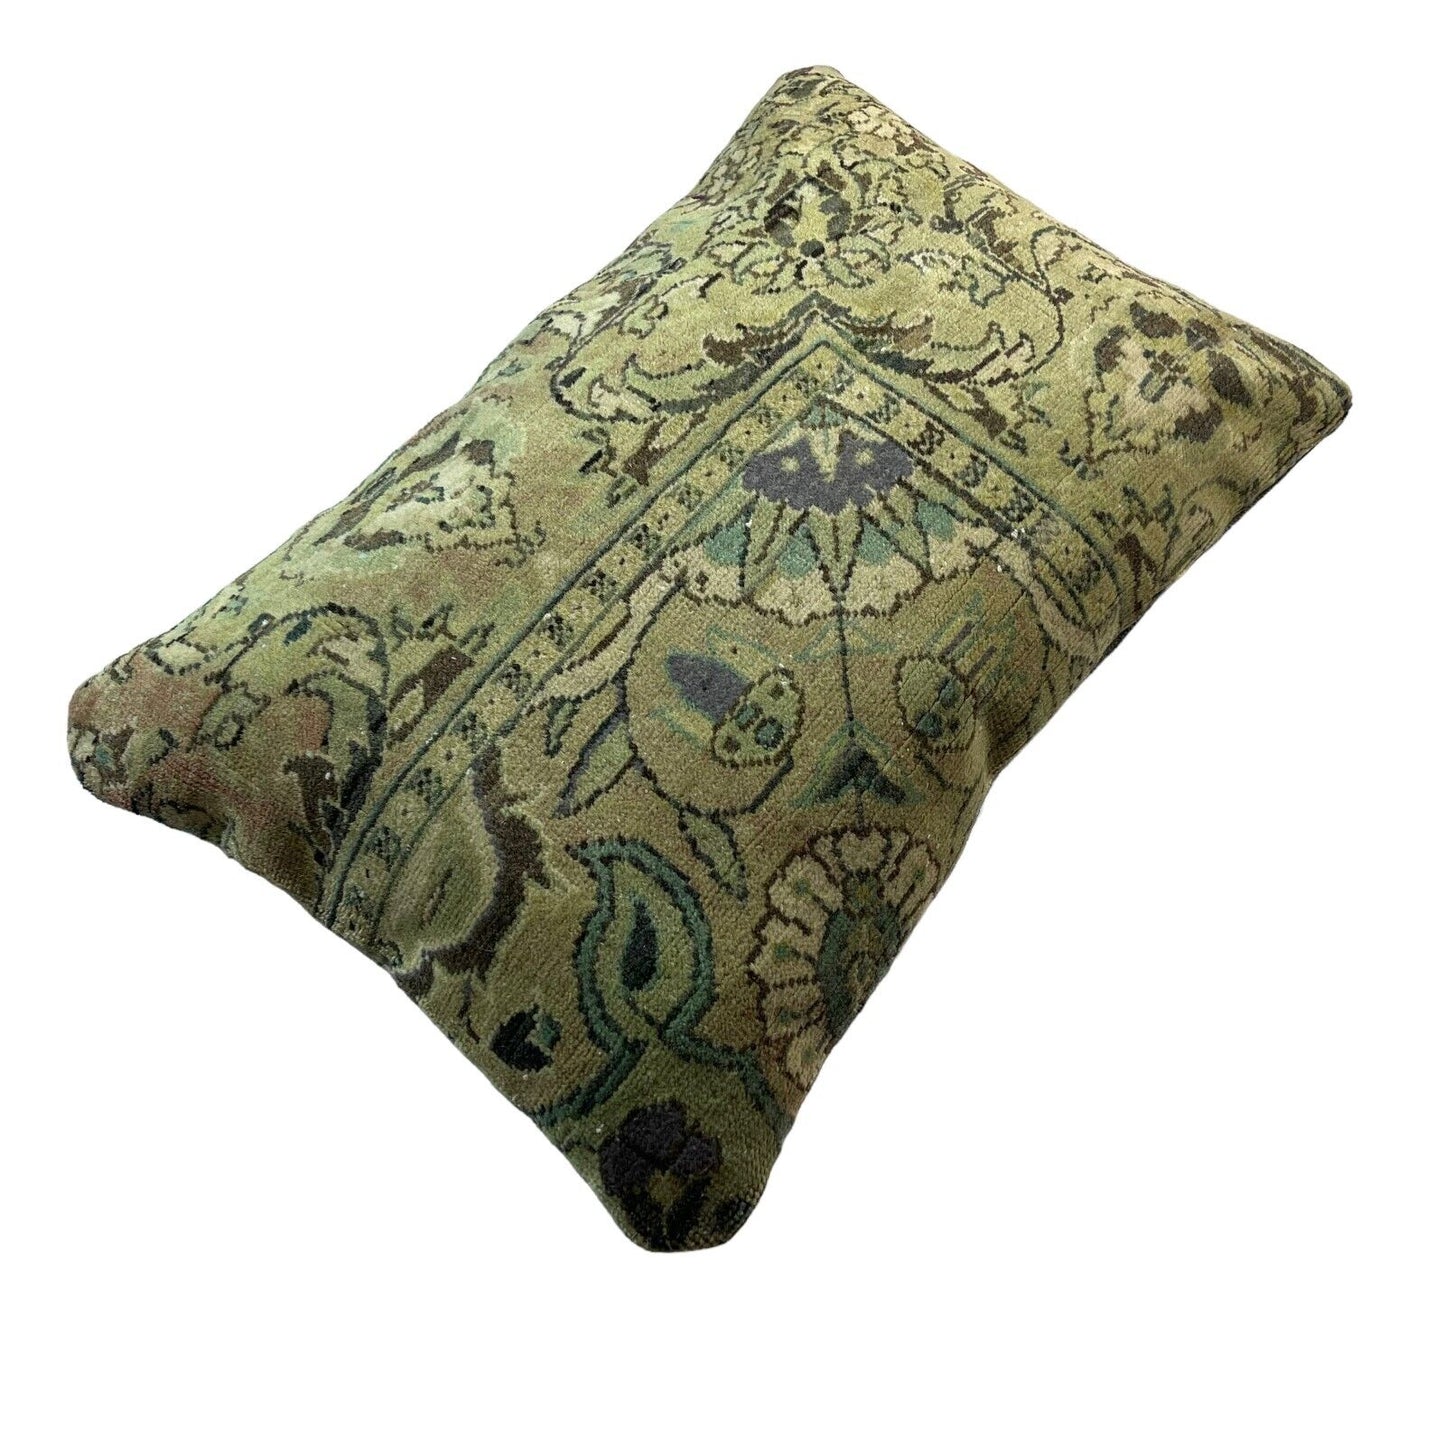 40x60 Cm Handgewebt Kelim Kissenbezug Vintage Kilim Cushion Cover , Boho,16'x24'